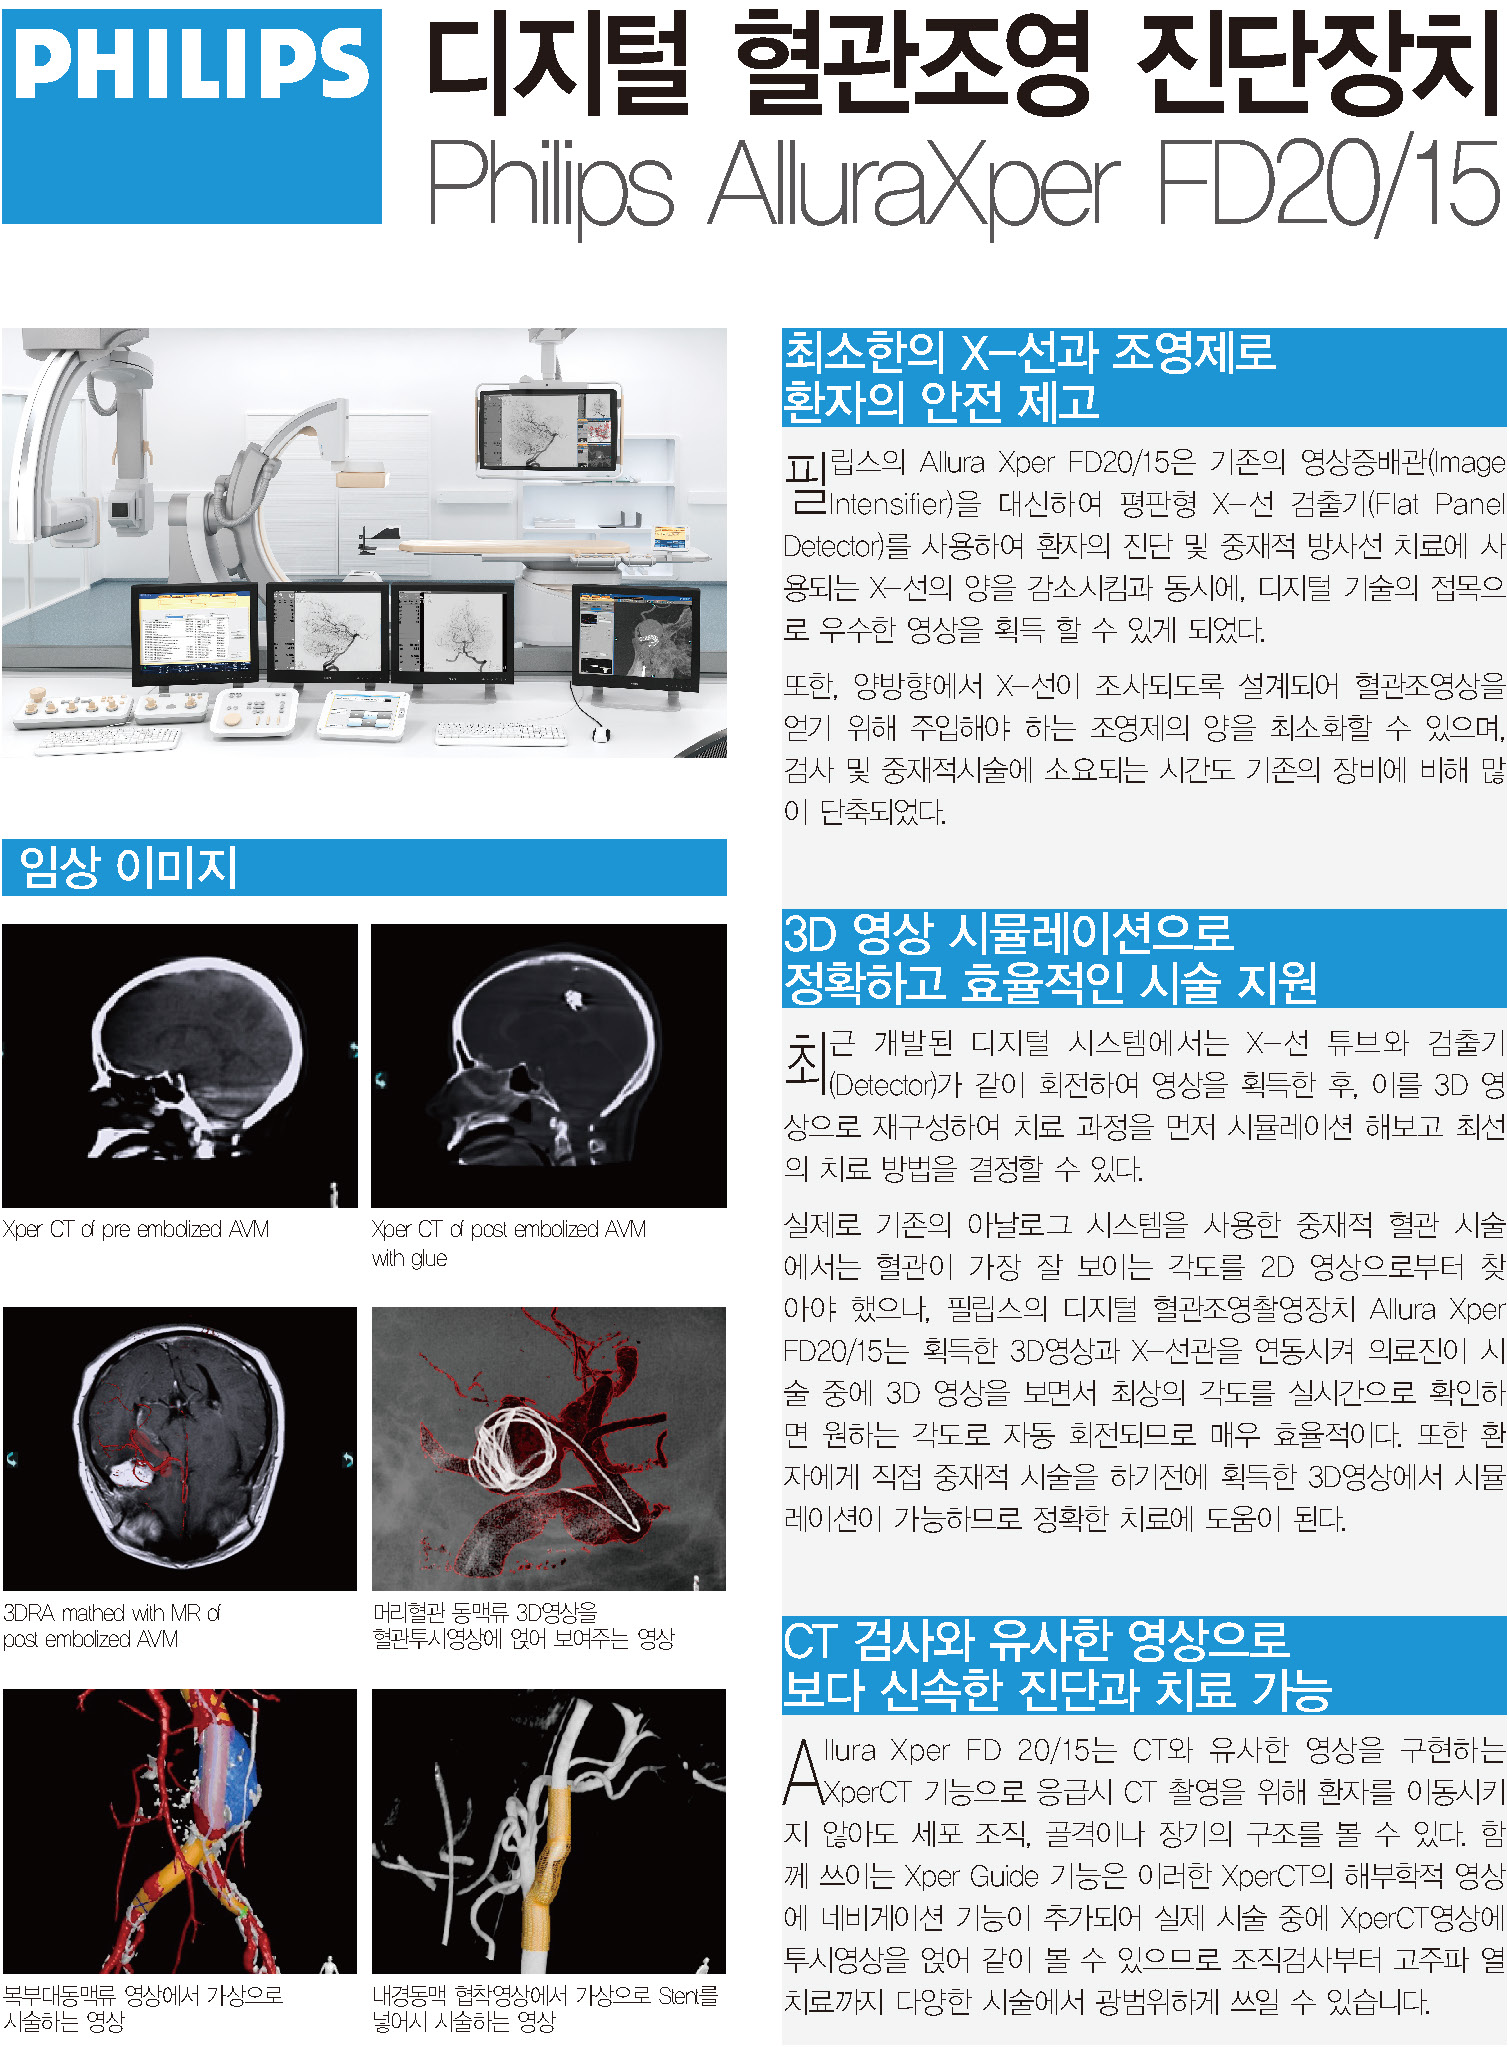 다목적 3D 디지털 혈관 조영촬영 장비 [Philips AlluraXper FD20/15] 첨부 이미지